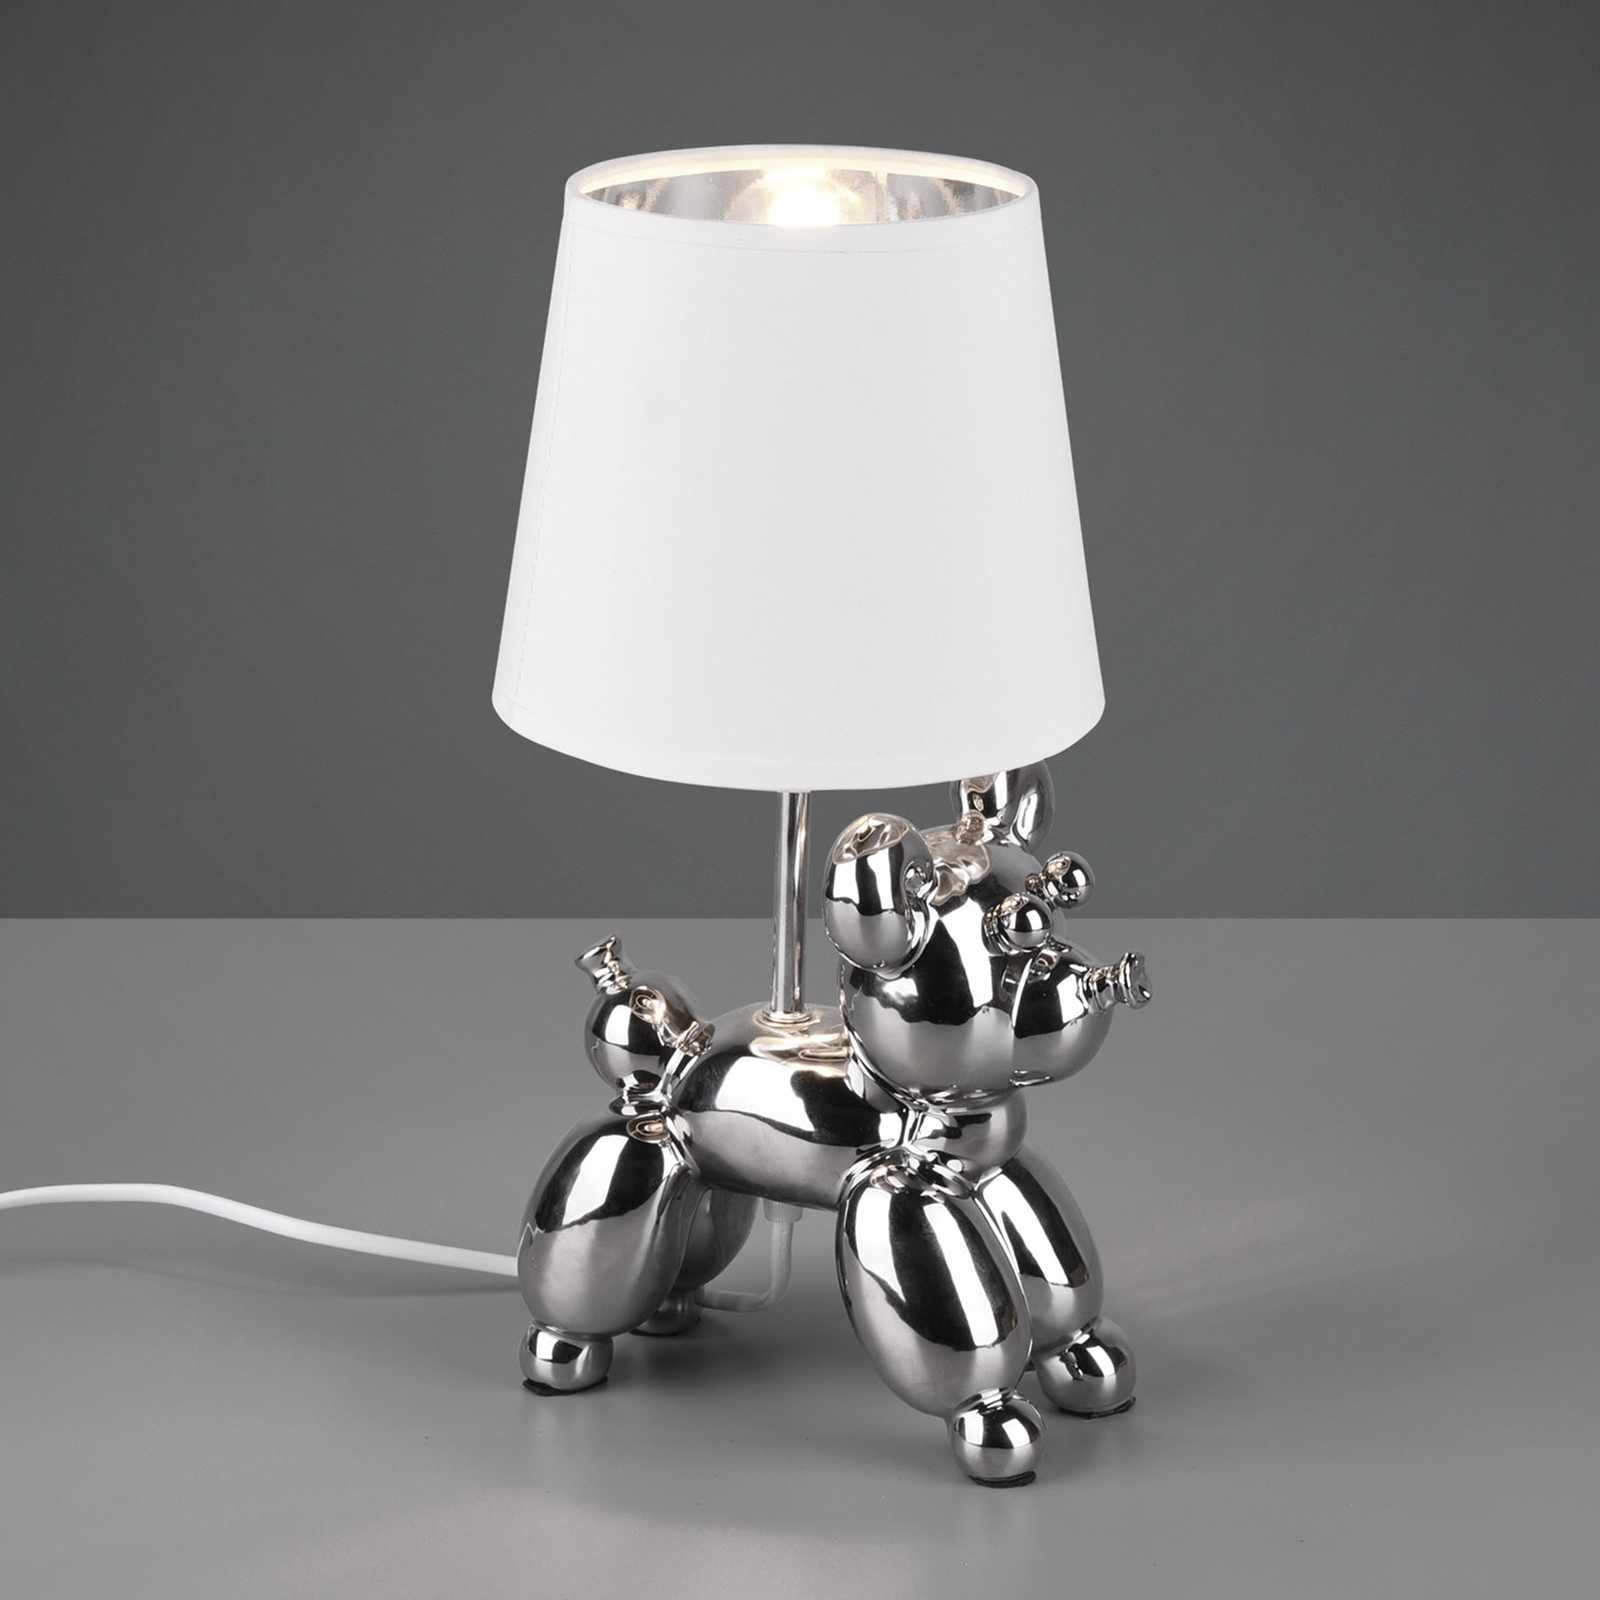 Tafellamp Bello met hond-figuur, zilver/wit